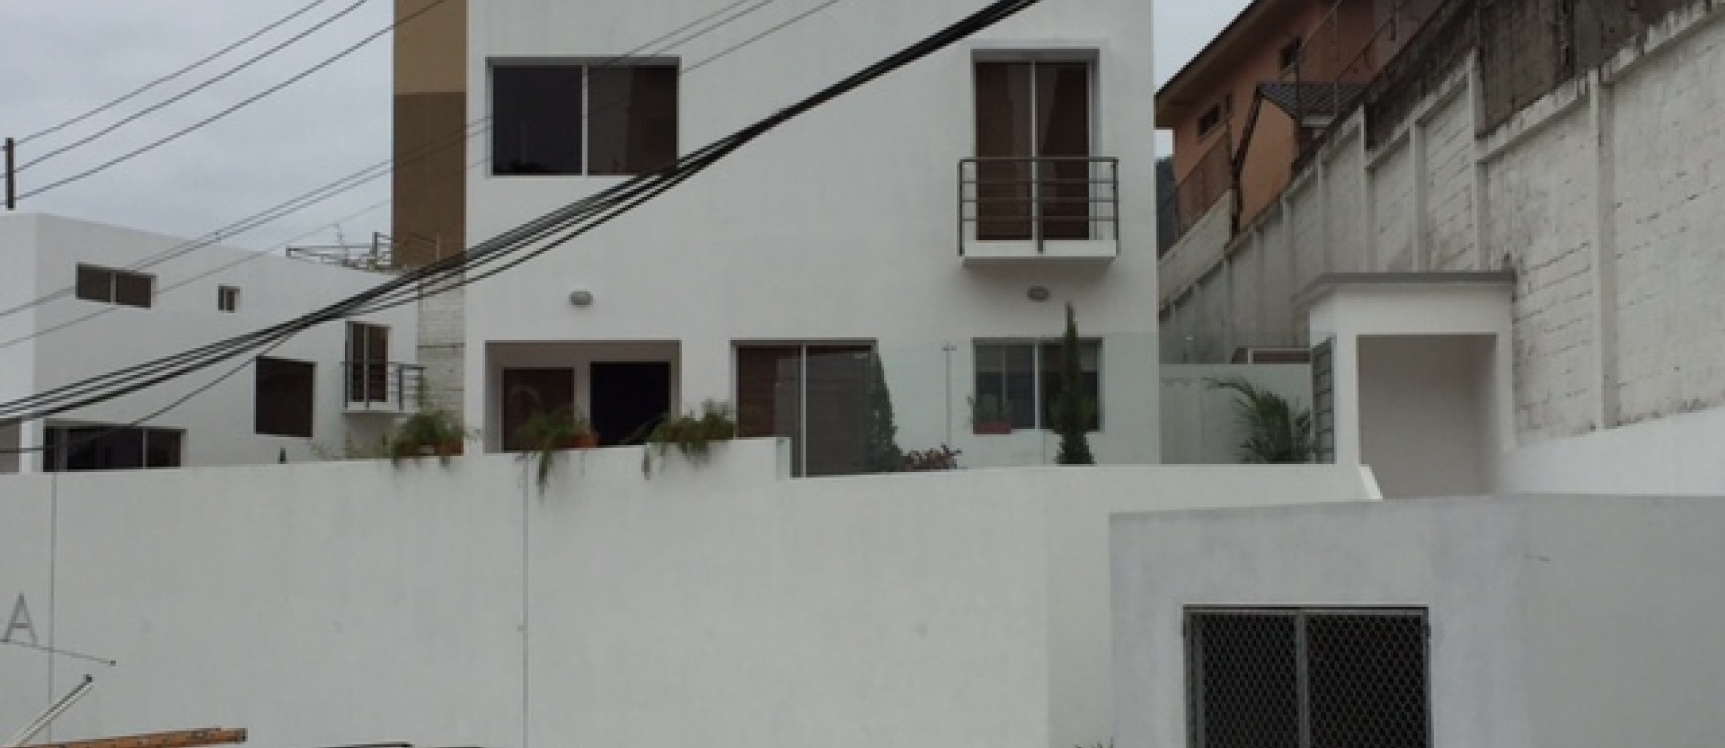 GeoBienes - Casa en venta en Las Cumbres, sector Los Ceibos, Guayaquil - Plusvalia Guayaquil Casas de venta y alquiler Inmobiliaria Ecuador